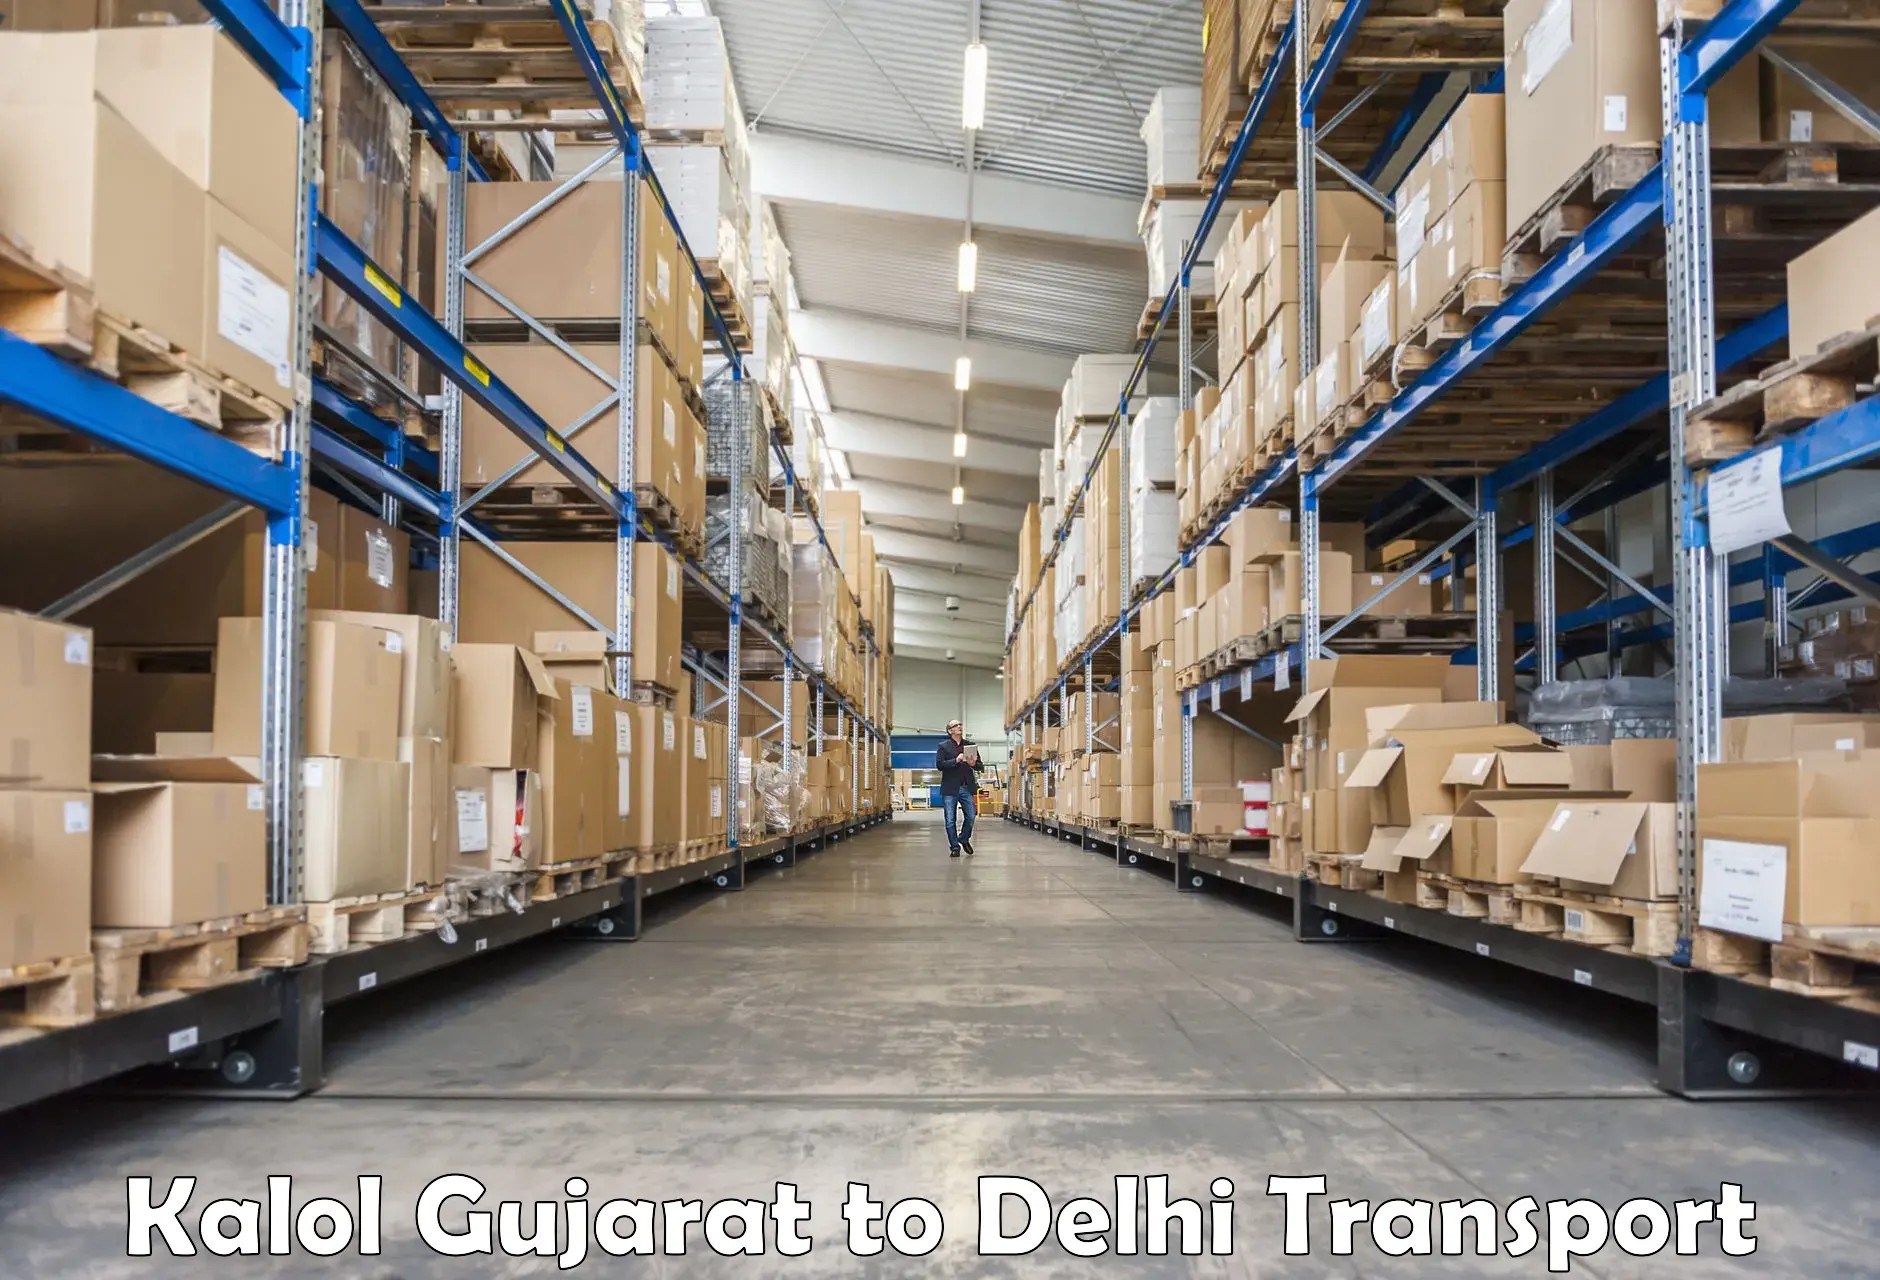 Door to door transport services Kalol Gujarat to Delhi Technological University DTU